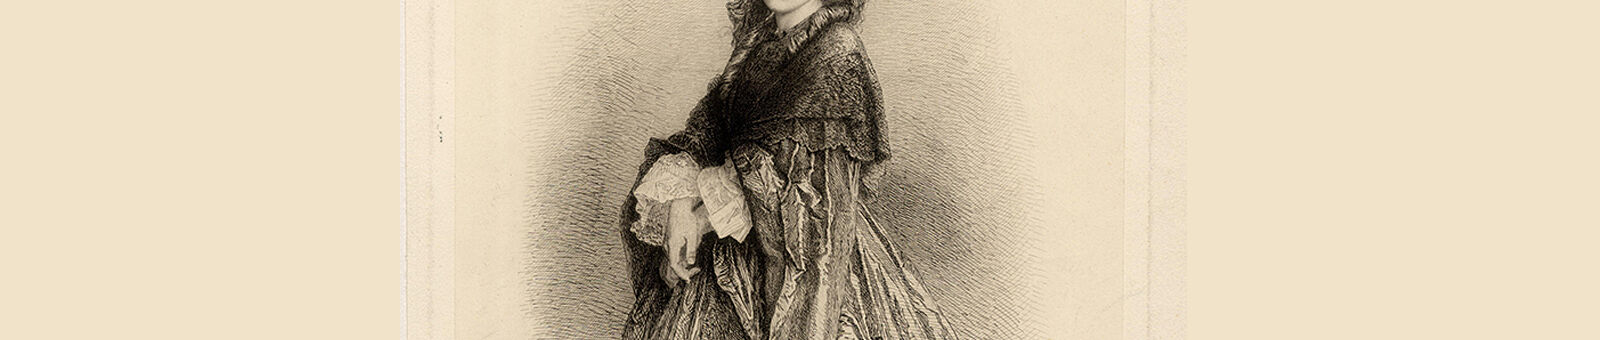 Portrait de Juliette Adam, gravure de Léopold Flameng, 1863